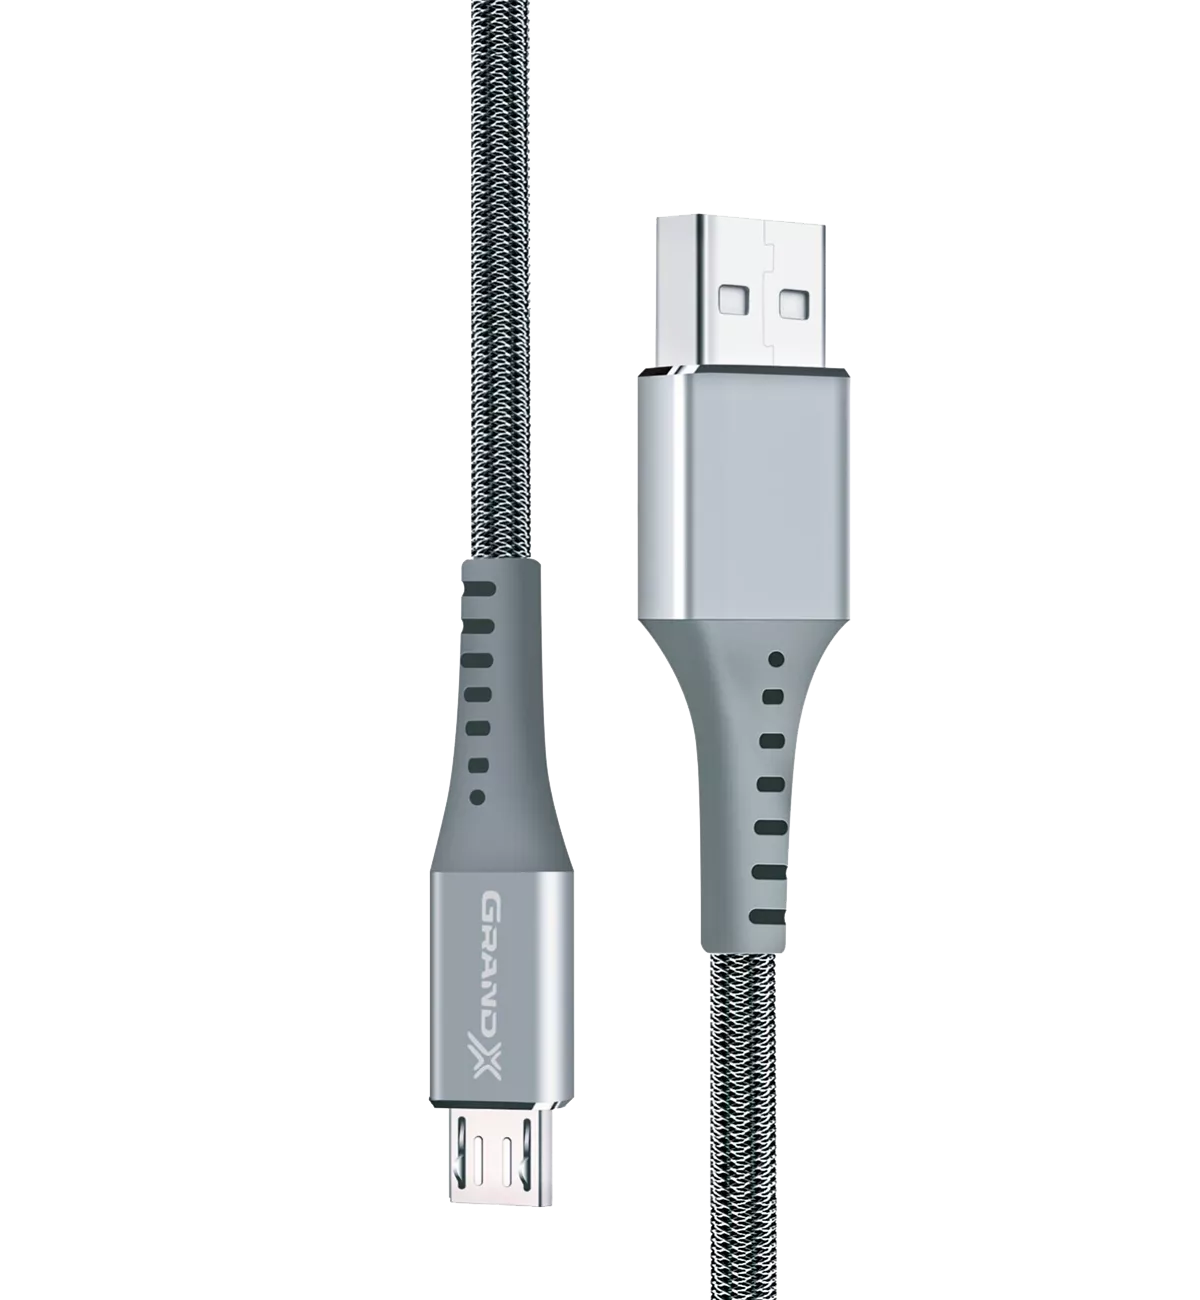 Кабель Grand-X USB-micro USB 3A, 1.2m, Fast Сharge, Grey толст.нейлон оплетка, премиум BOX (FM-12G)